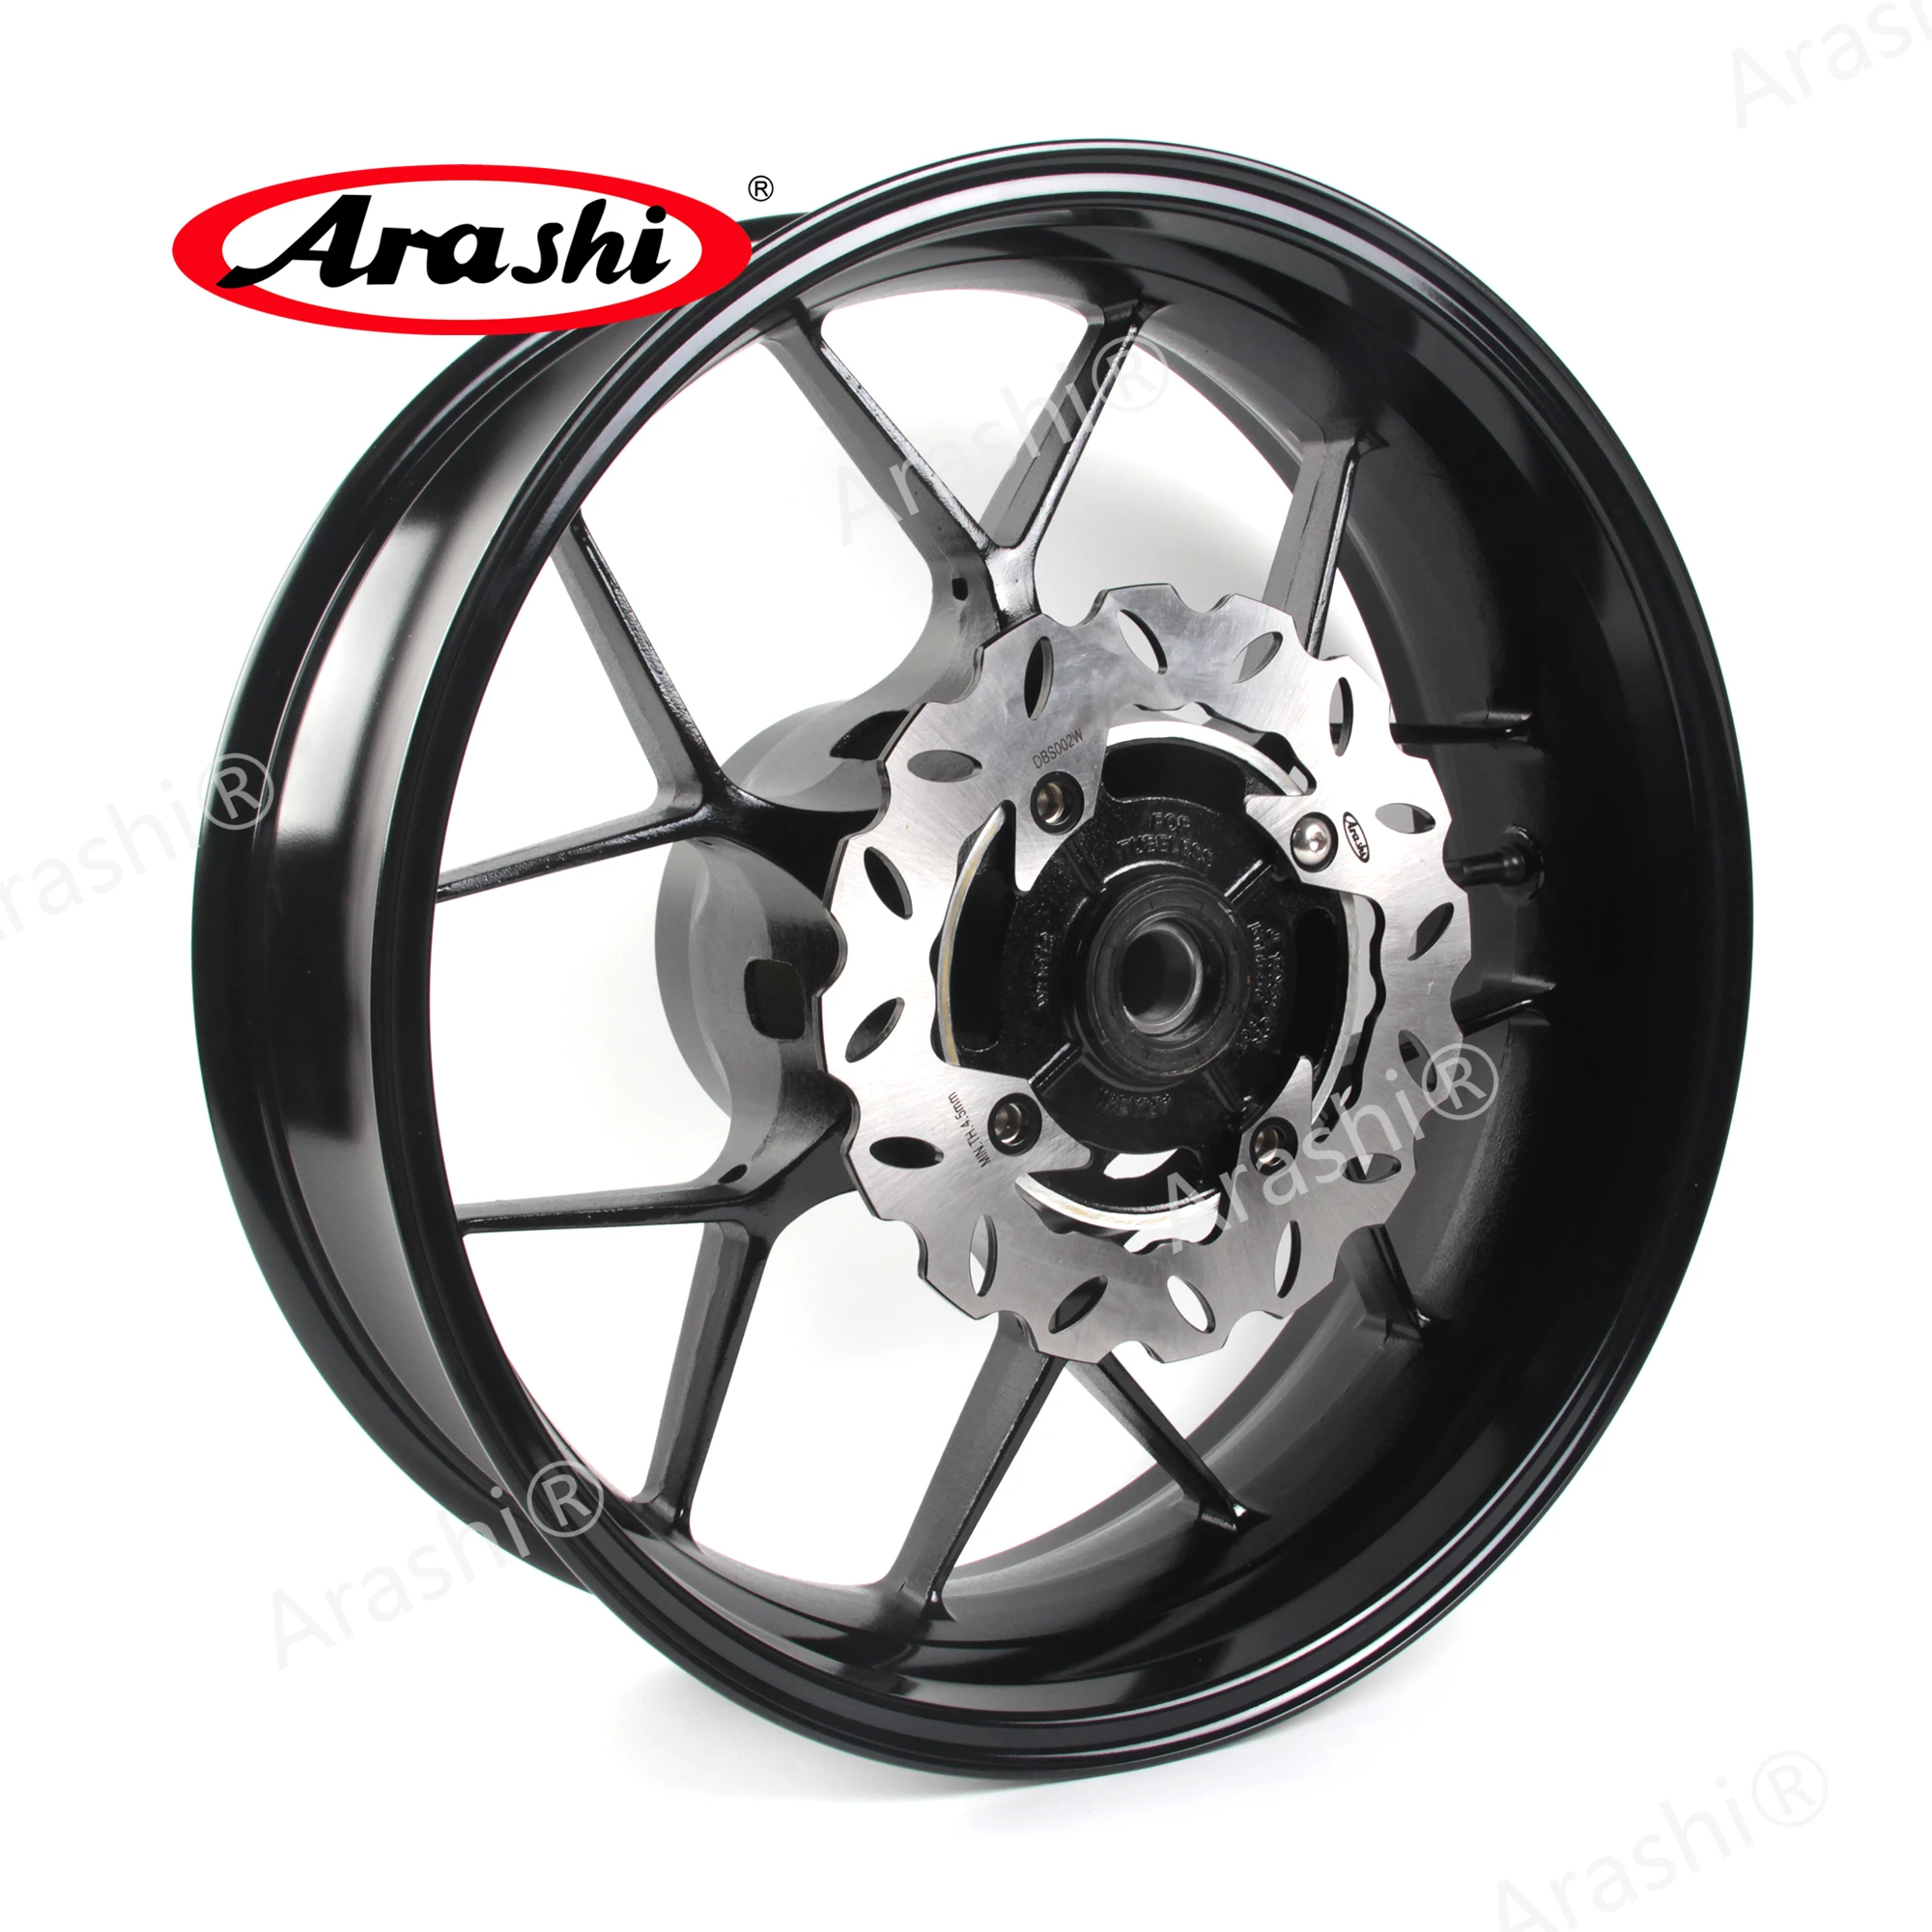 

Arashi 1 комплект задний колесный обод задний тормозной диск ротор для HONDA CBR1000RR CBR1000 CBR 1000 RR 2006 2007 2008 2009 2010 2011 - 2016